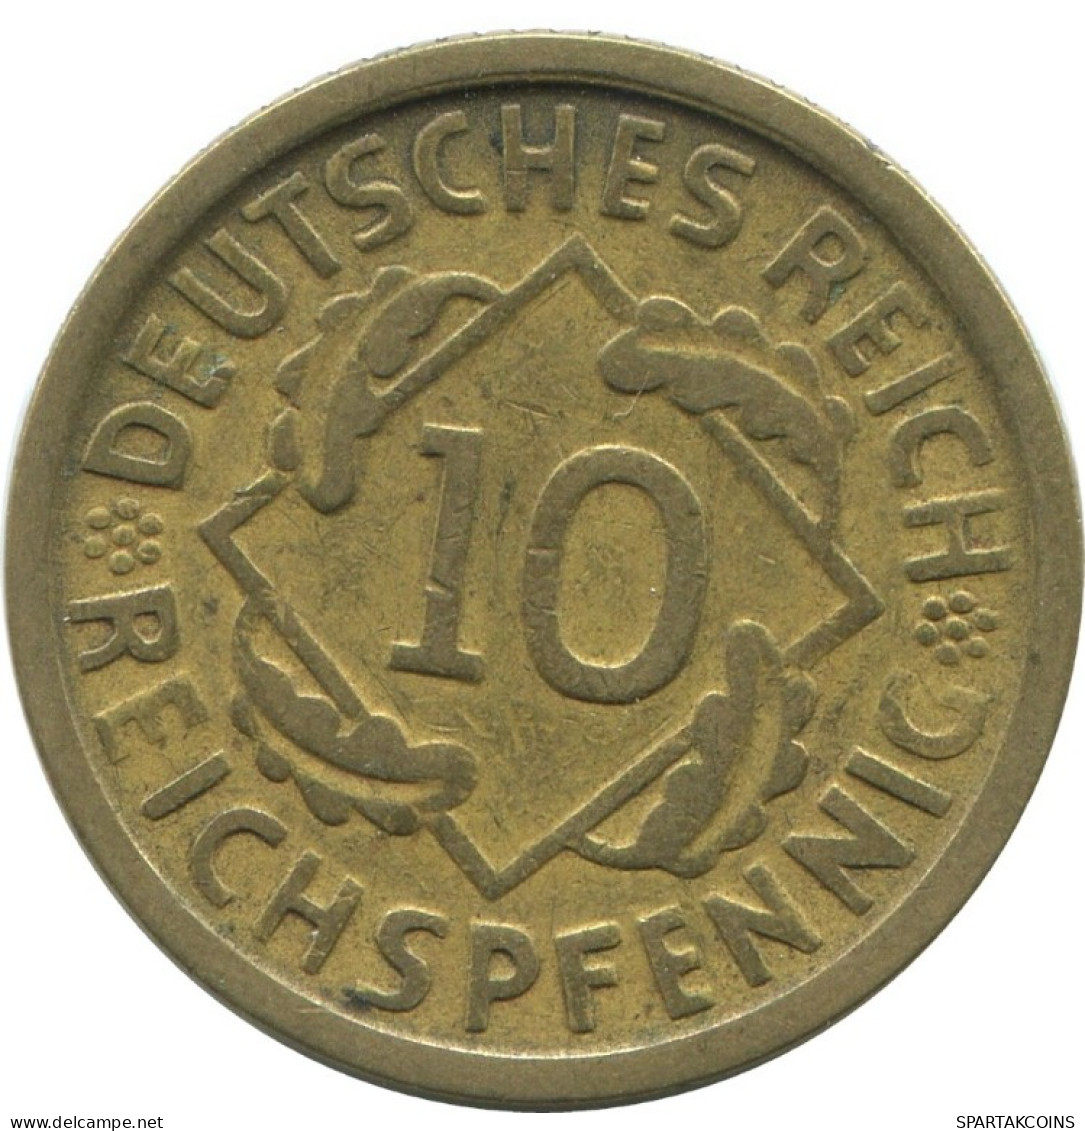 10 REICHSPFENNIG 1925 D GERMANY Coin #AE371.U.A - 10 Rentenpfennig & 10 Reichspfennig